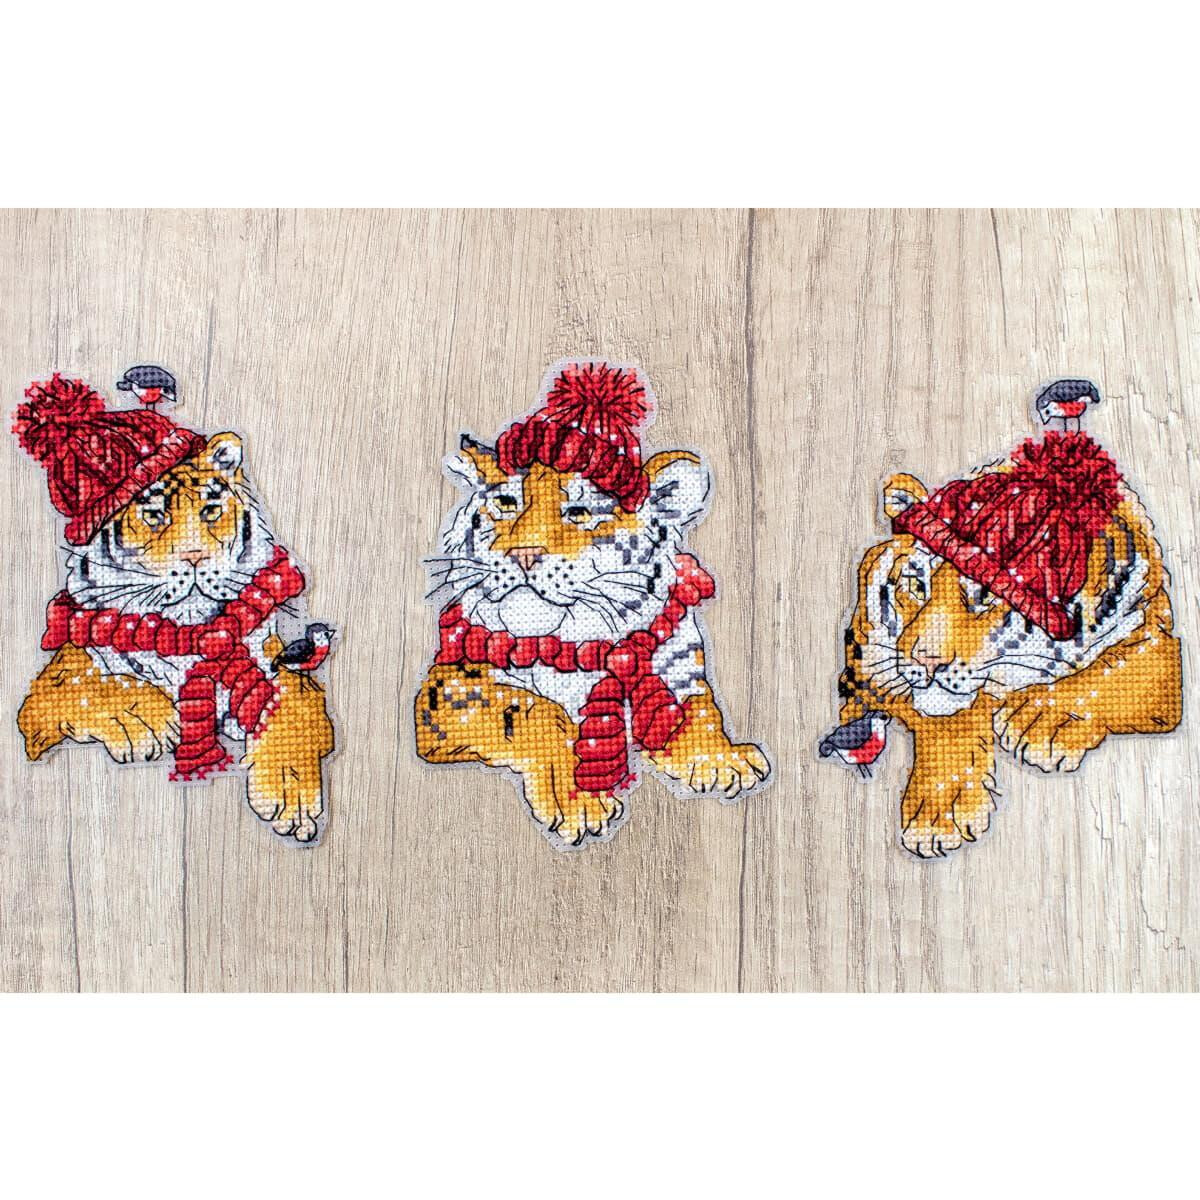 Tres cachorros de tigre de dibujos animados llevan gorros...